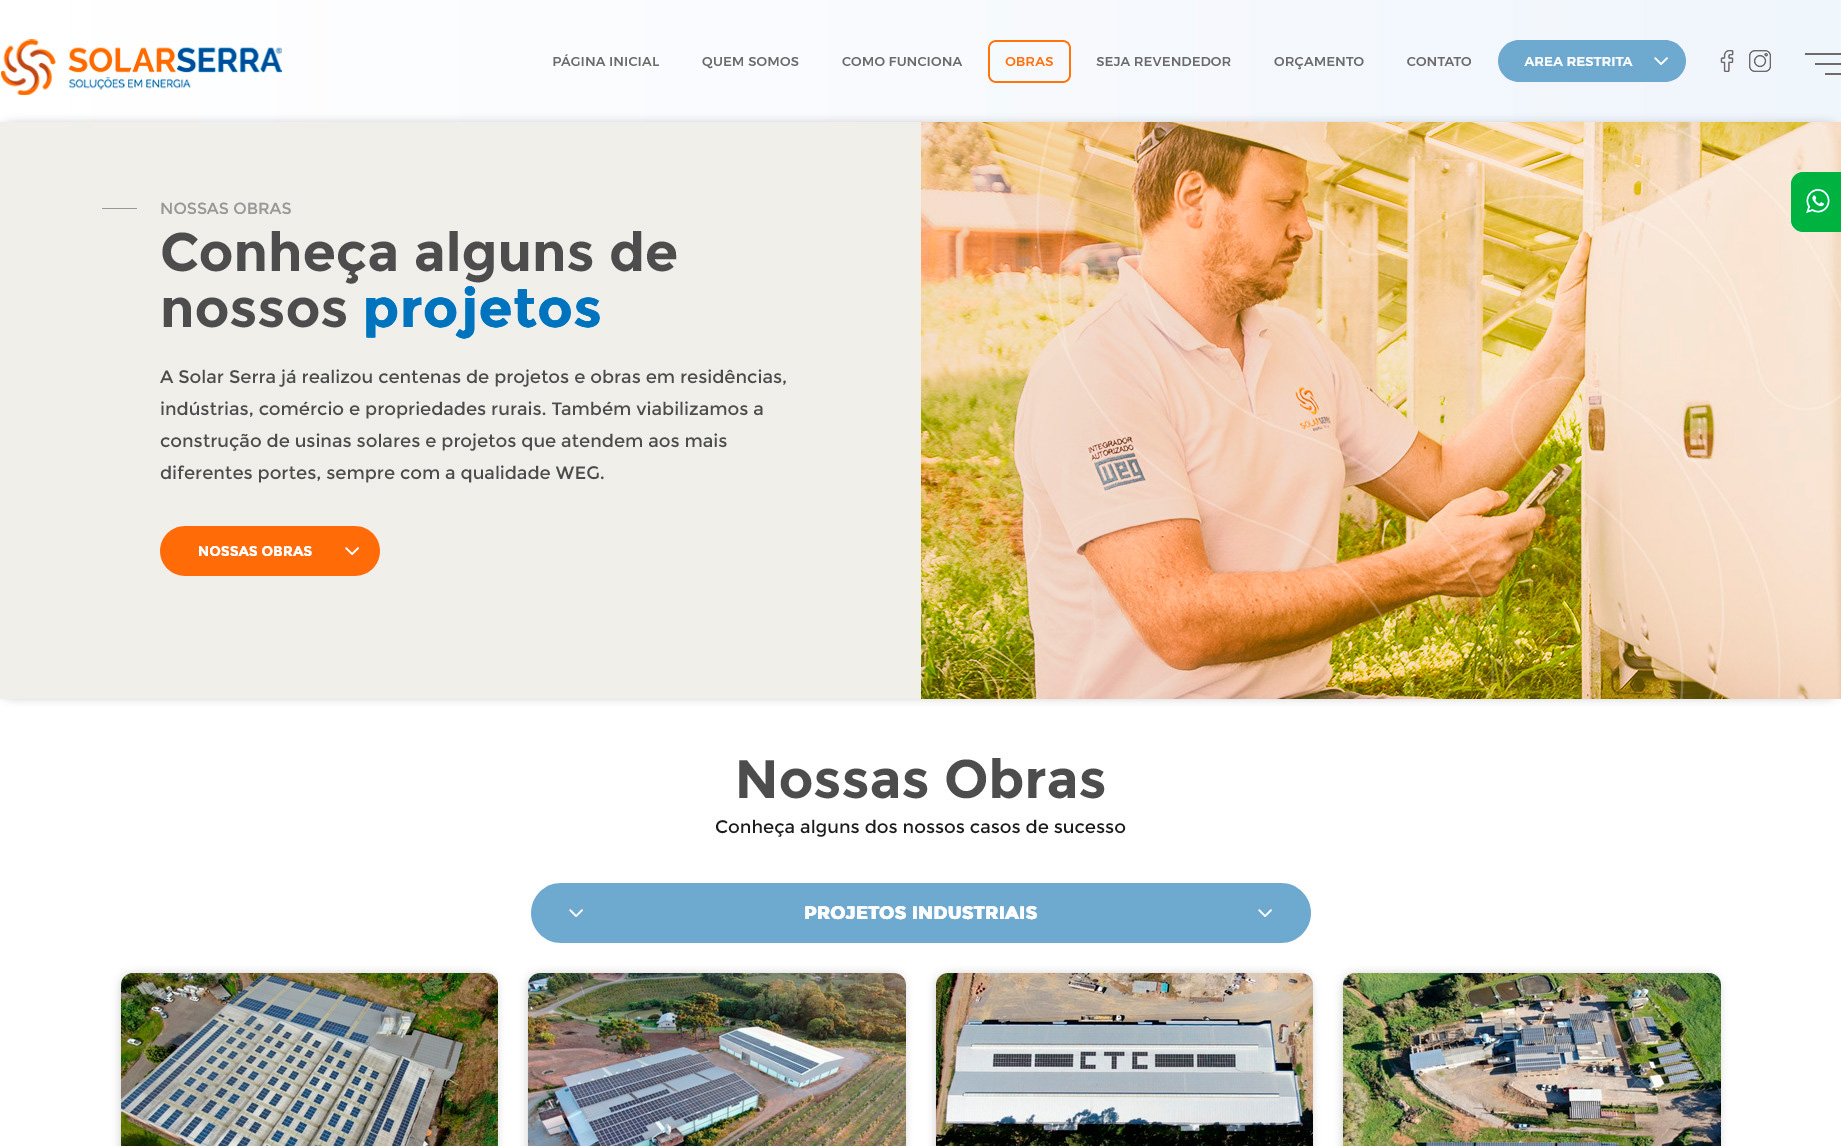 tela interna do site solarserra.com.br